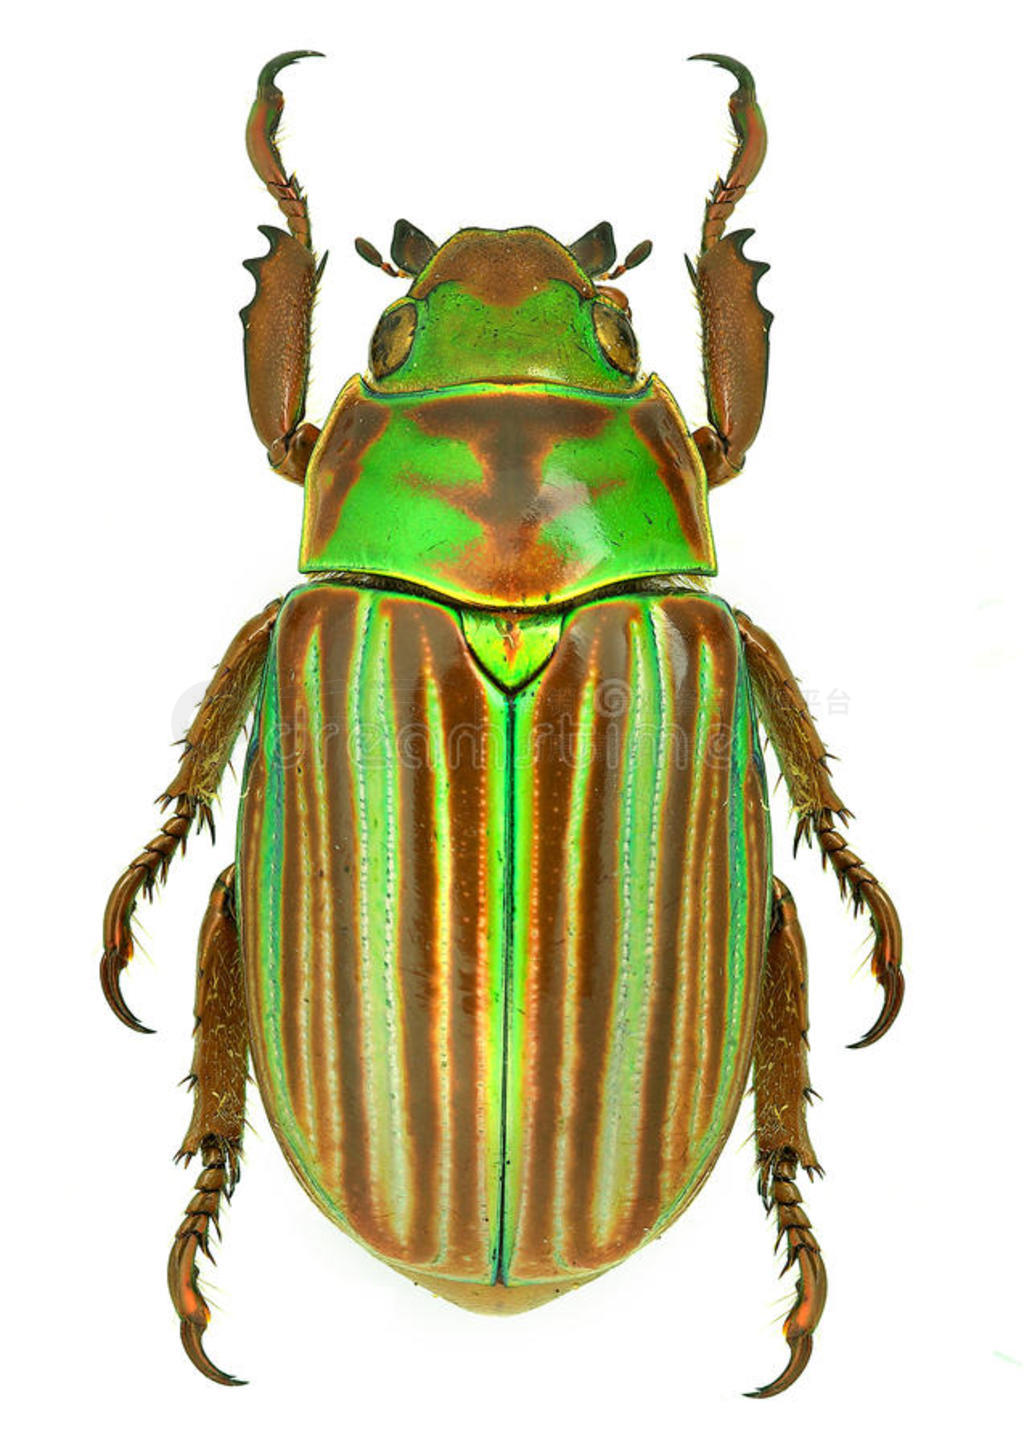 来自墨西哥的宝石金龟子甲虫chrysina adelaida图片免费下载-5127061951-千图网Pro